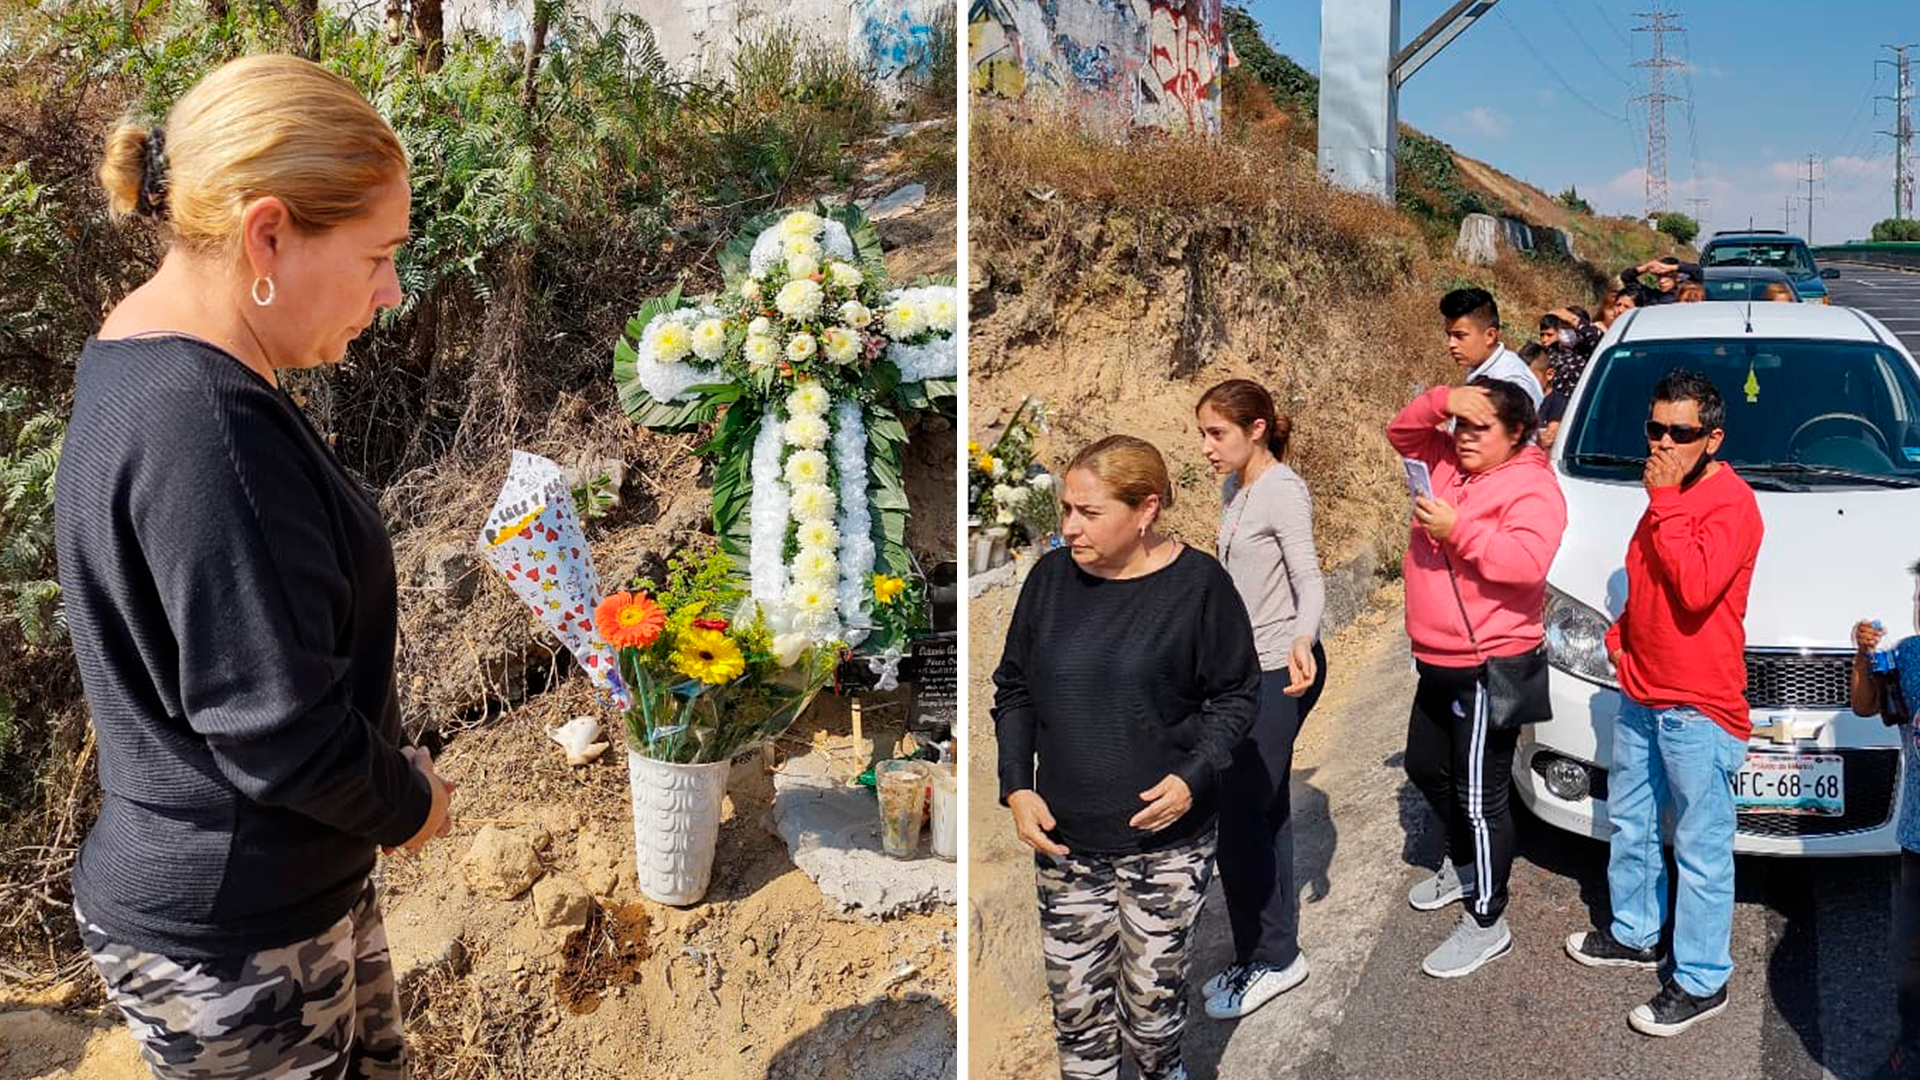 Los familiares de Ocaña han acudido en distintas ocasiones al sitio donde perdió la vida (Fotos: Instagram/@berthaocaa)